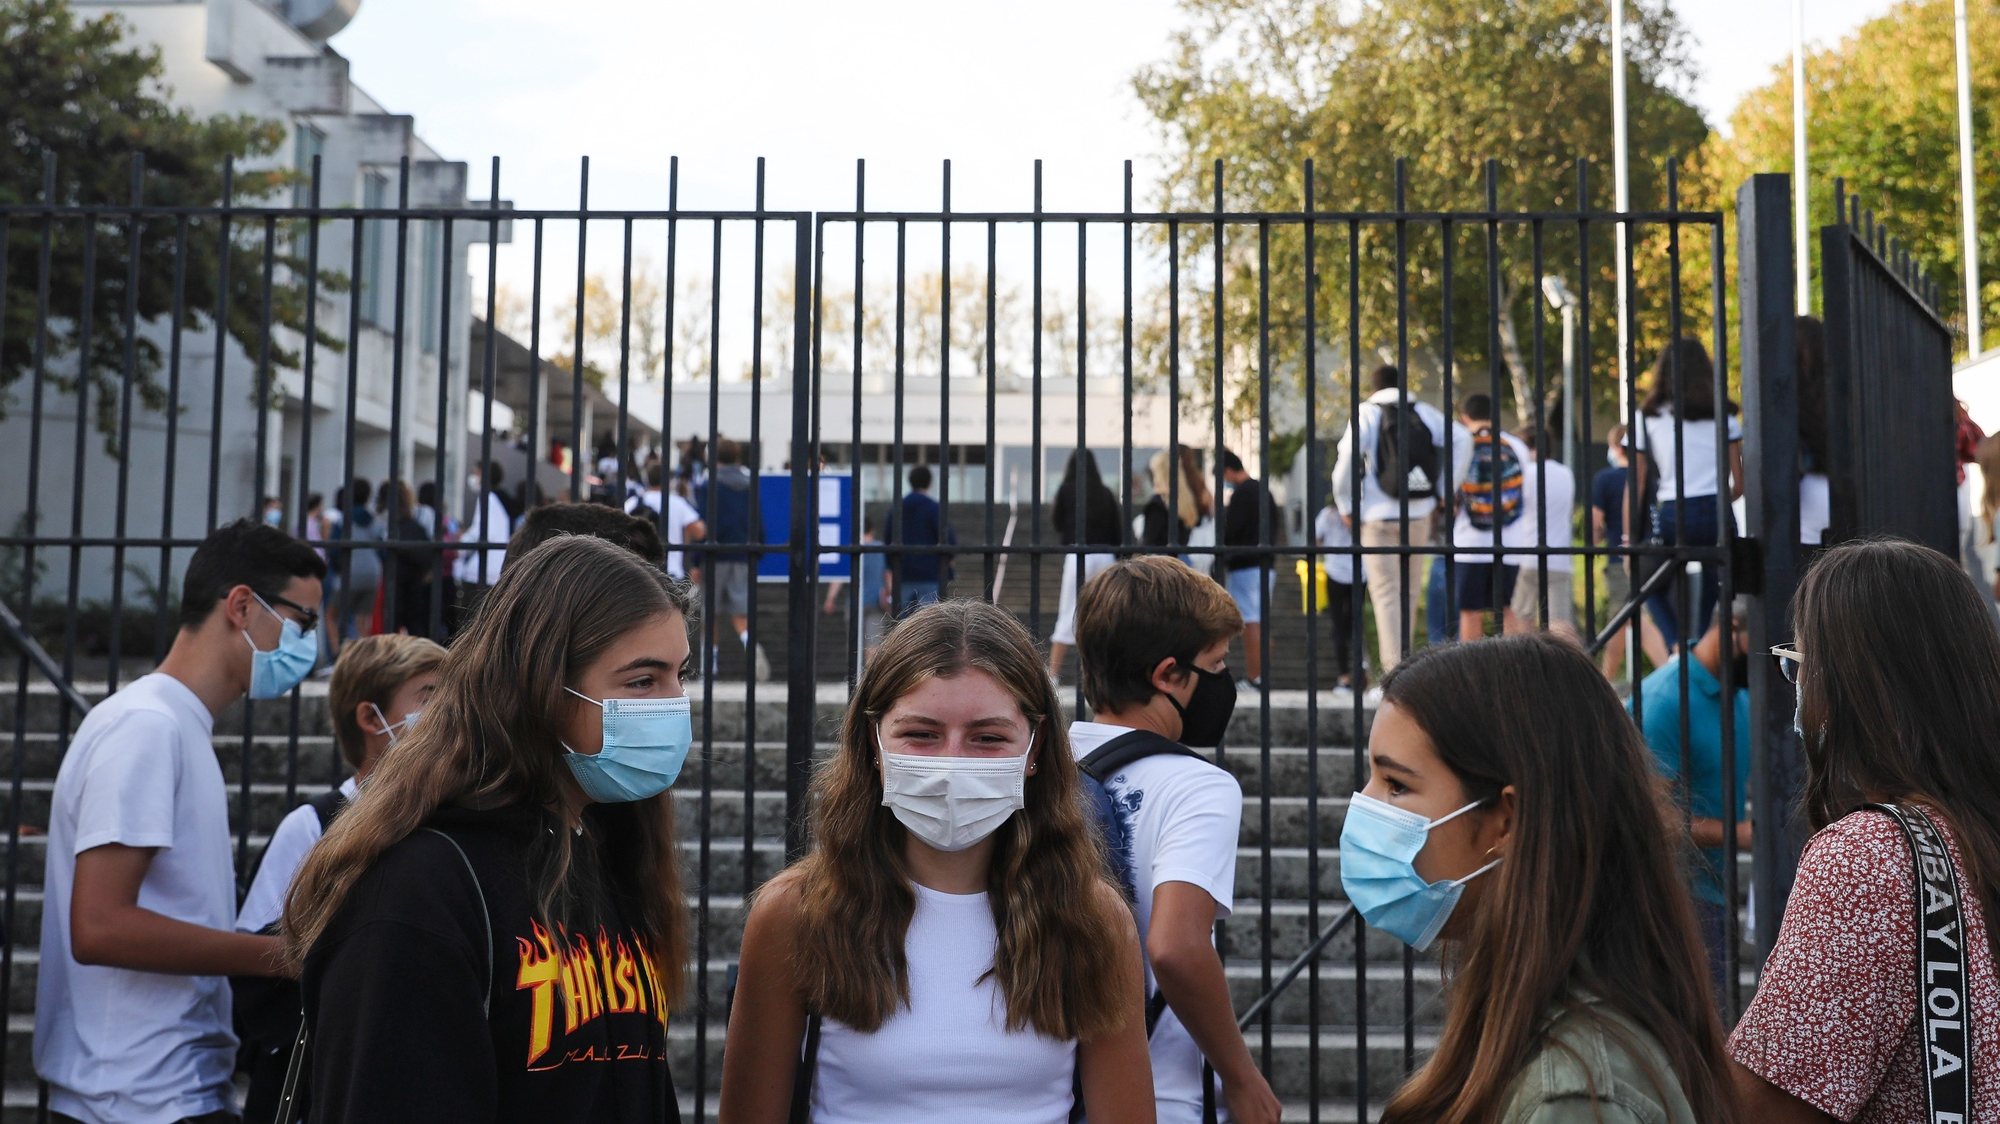 Alunos da Escola Secundária Garcia da Orta no primeiro dia de aulas em plena pandemia de Covid-19, no Porto, 17 de setembro de 2020. JOSÉ COELHO/LUSA